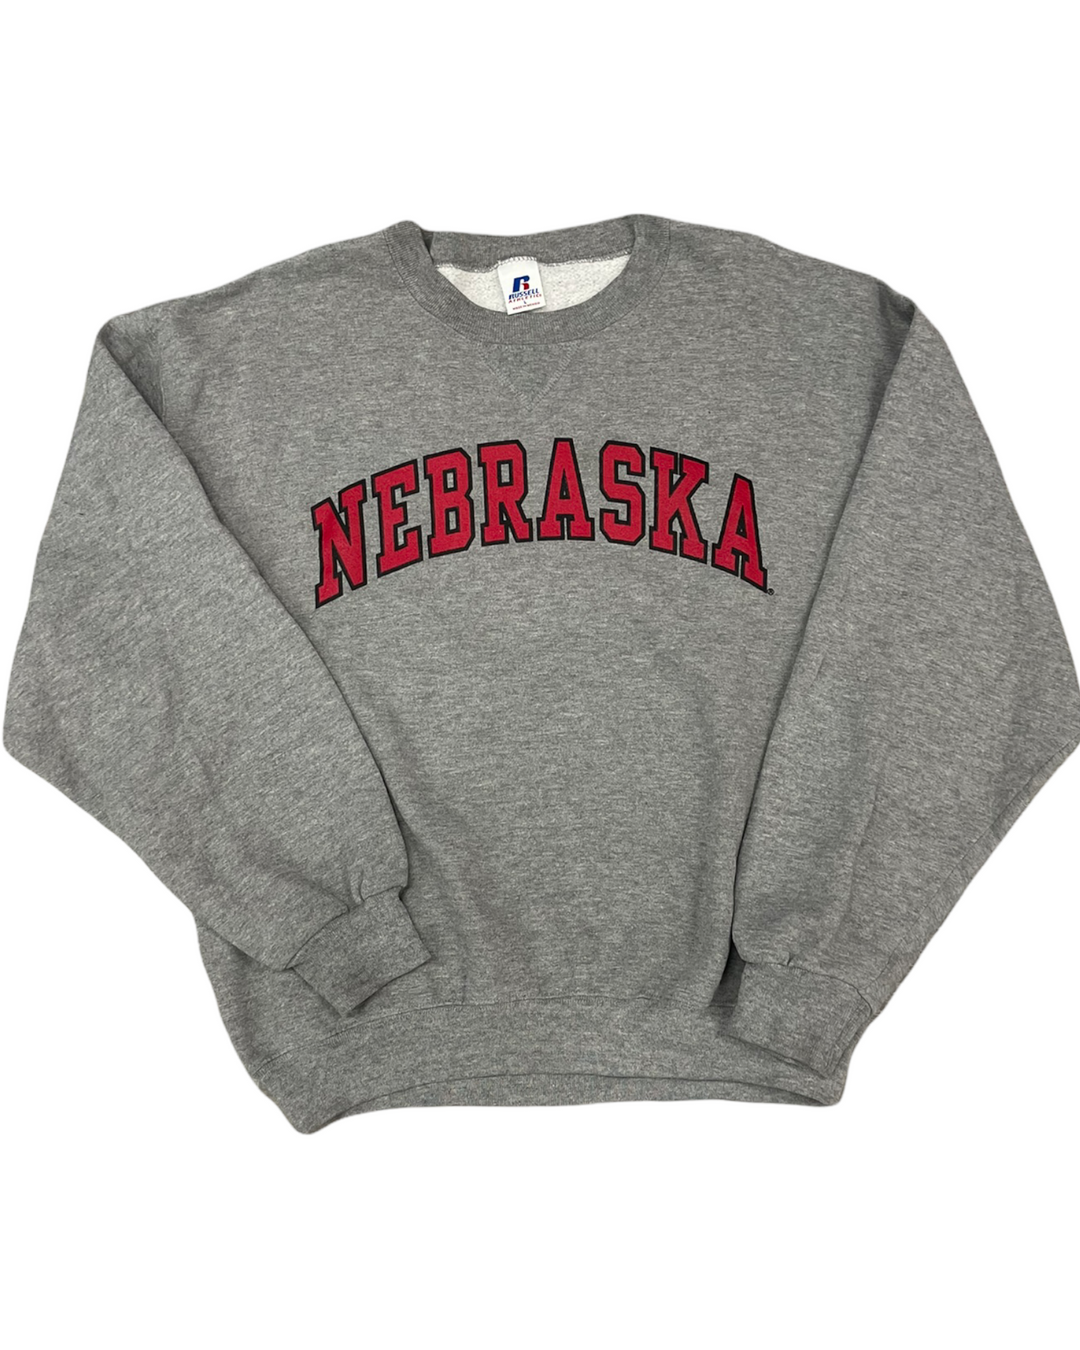 Nebraska Vintage Sweatshirt